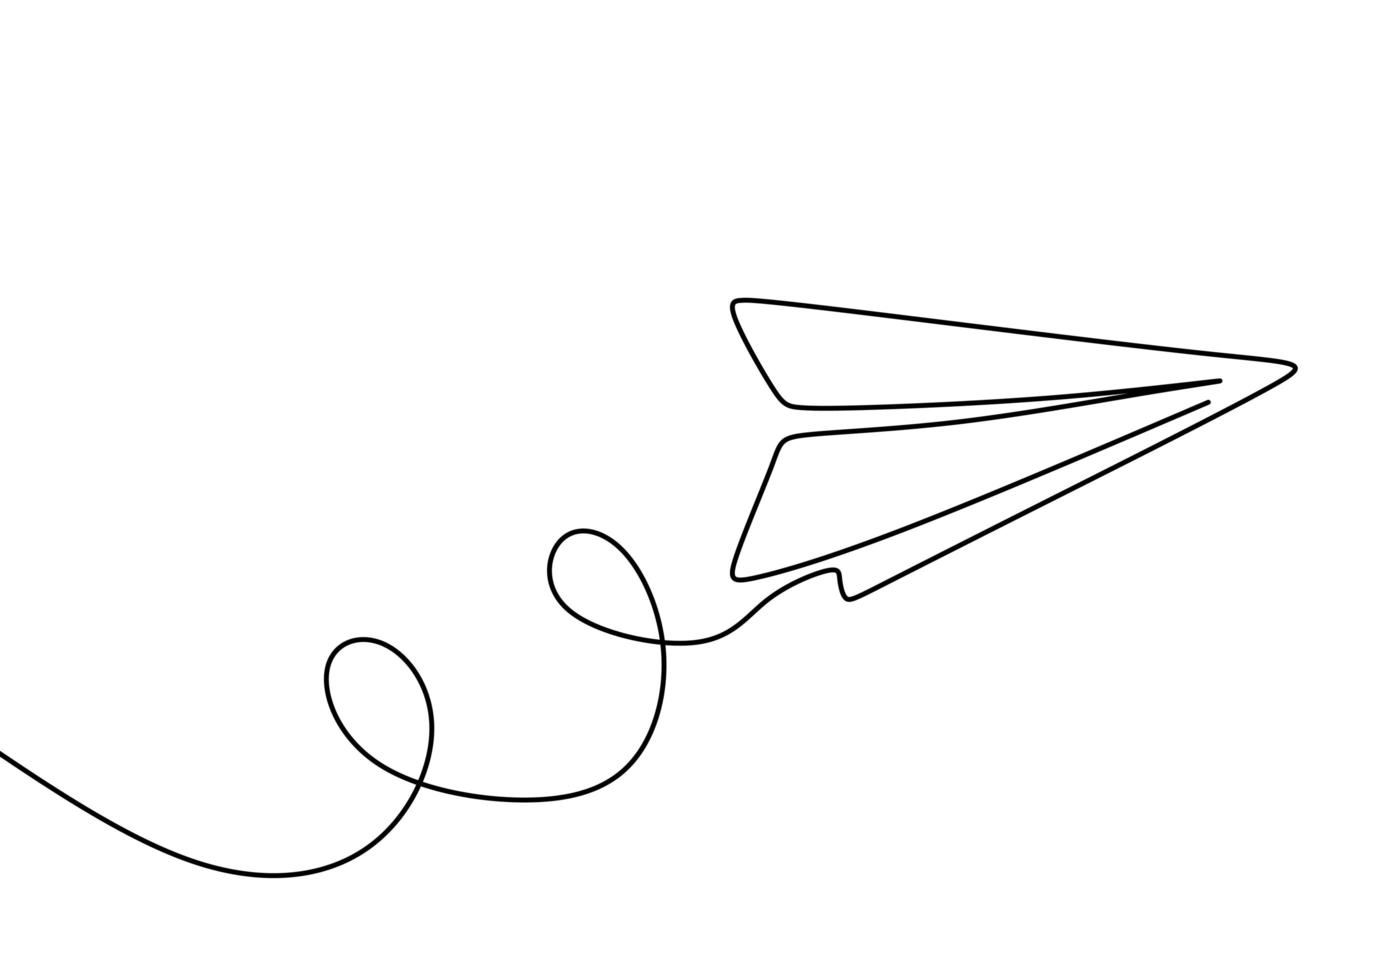 avión de papel, símbolo creativo. dibujo continuo de una línea, estilo minimalista. vector